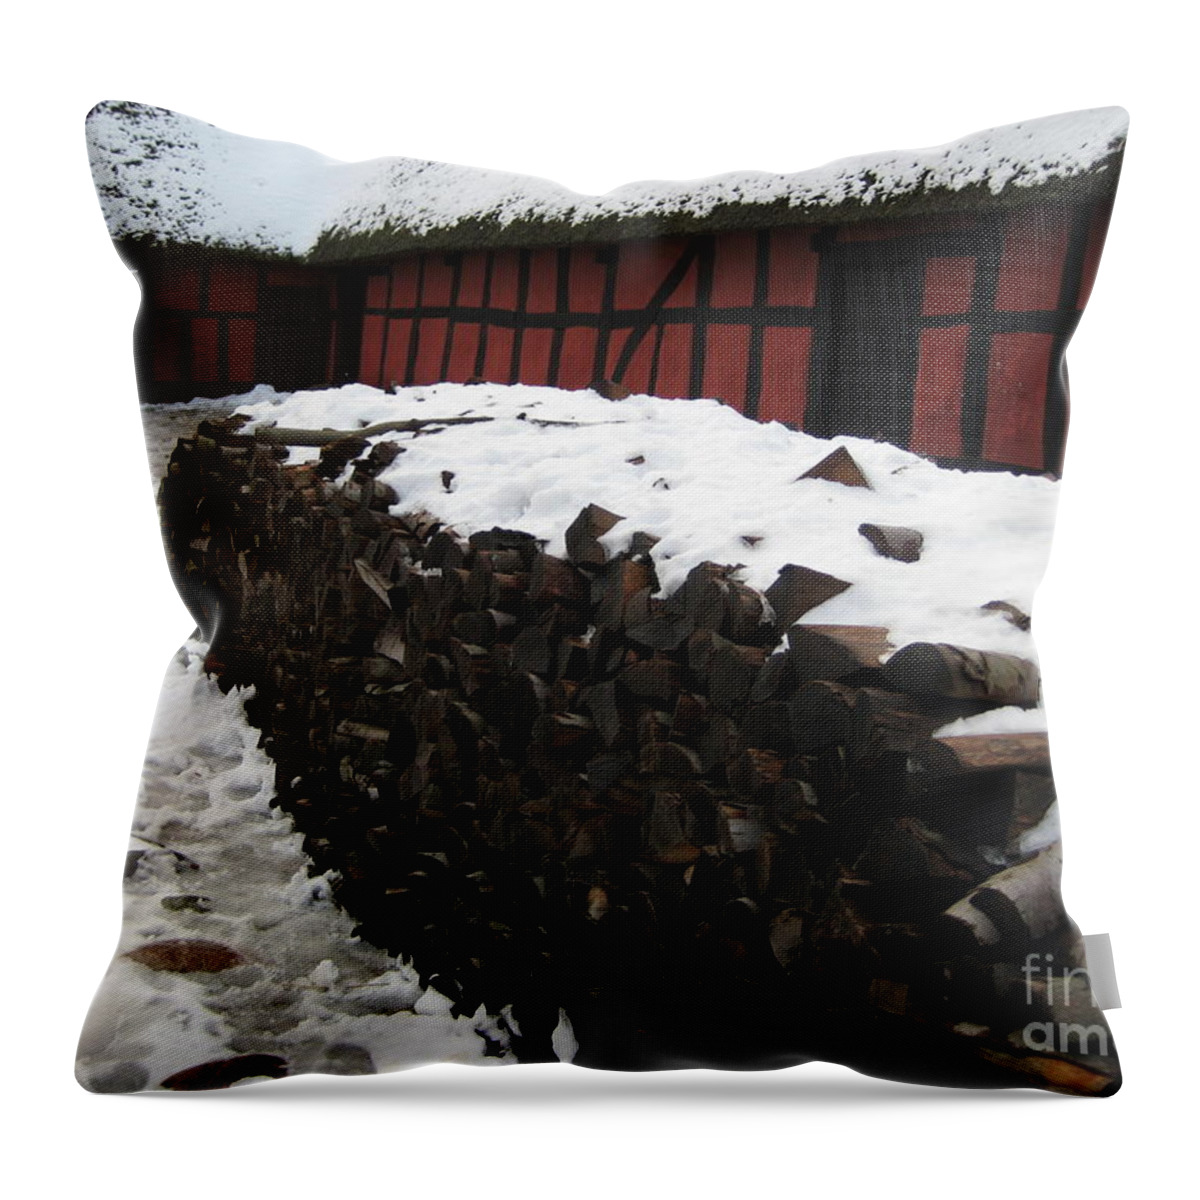 Farm Throw Pillow featuring the photograph Old red farm by Susanne Baumann